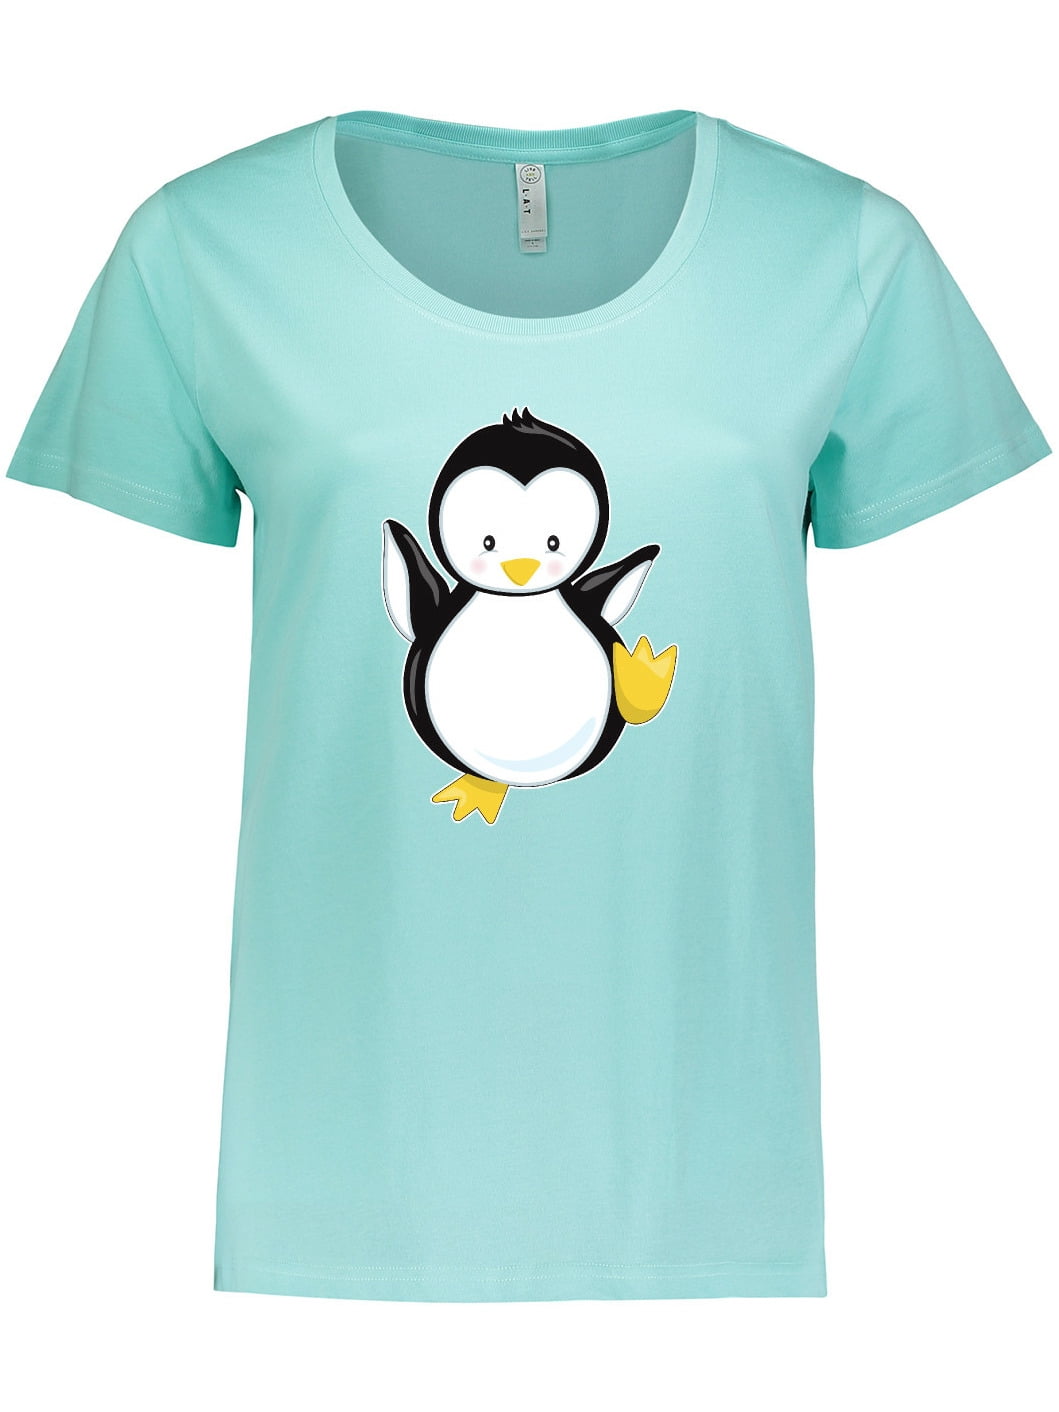 I Love Penguins Boys Girls Kids Childrens Tee T-Shirt 